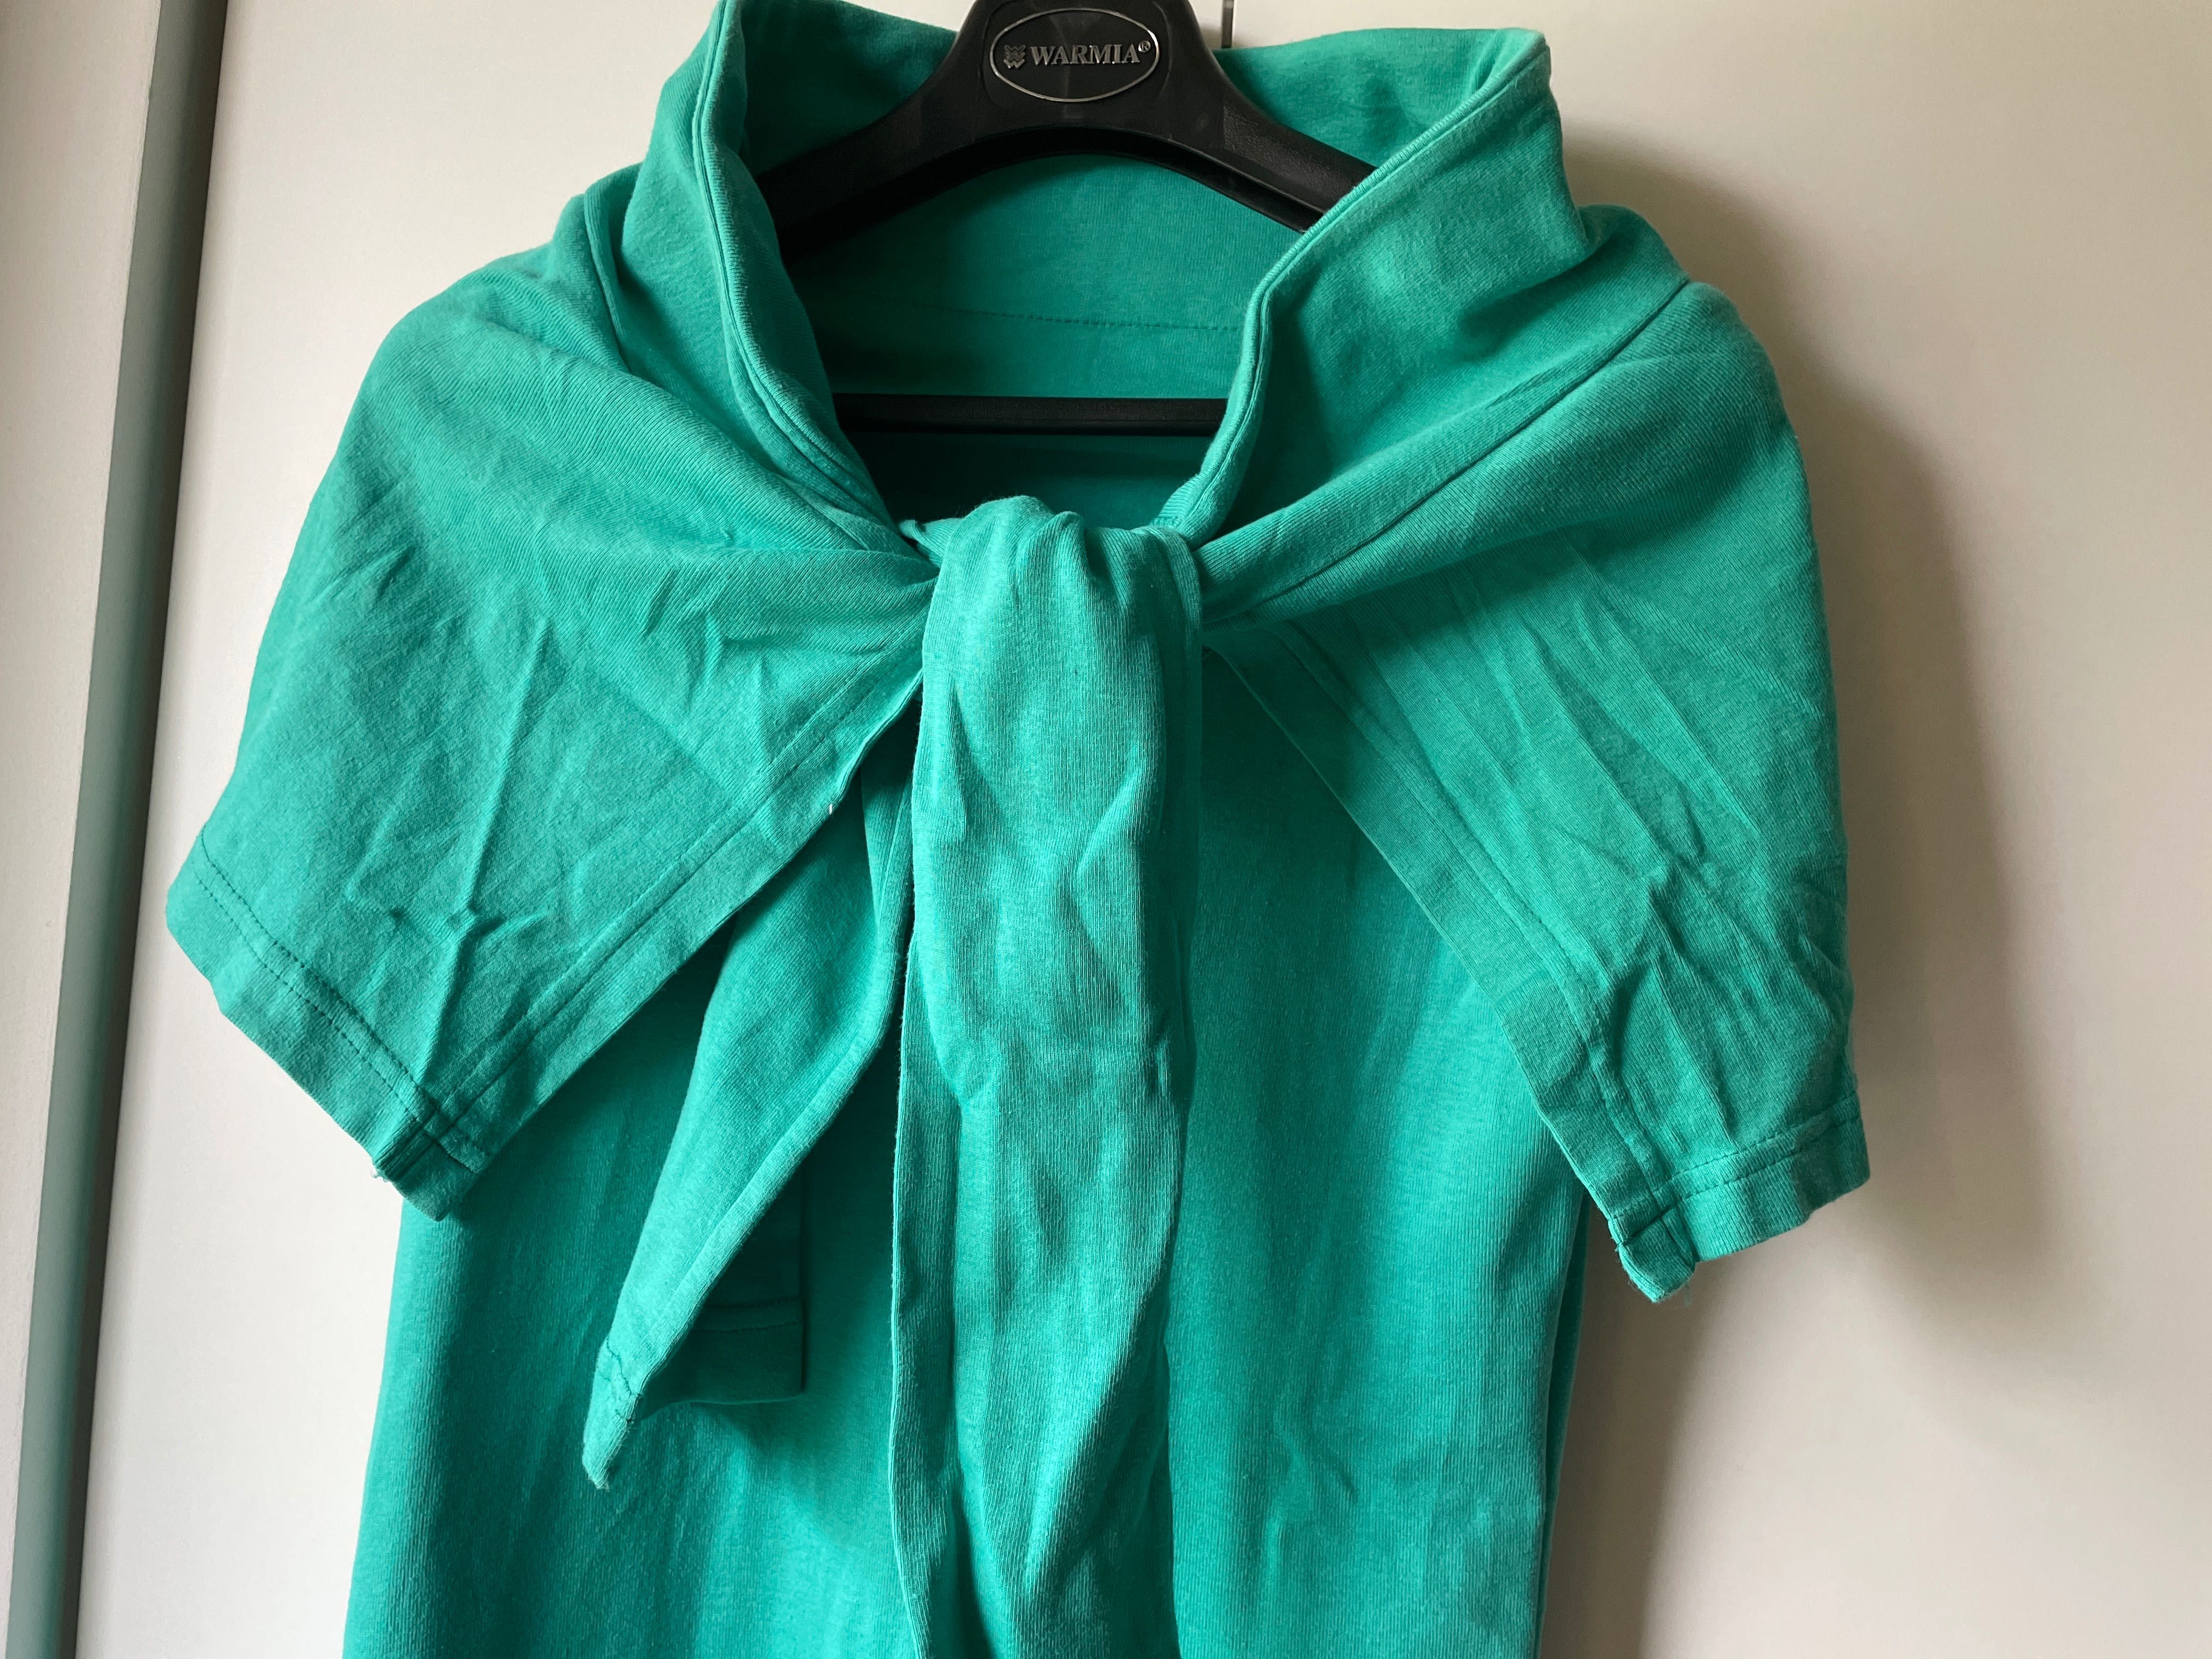 sukienka zielony/seledyn, bawełna/dresowa, wdzianko, rozmiar S